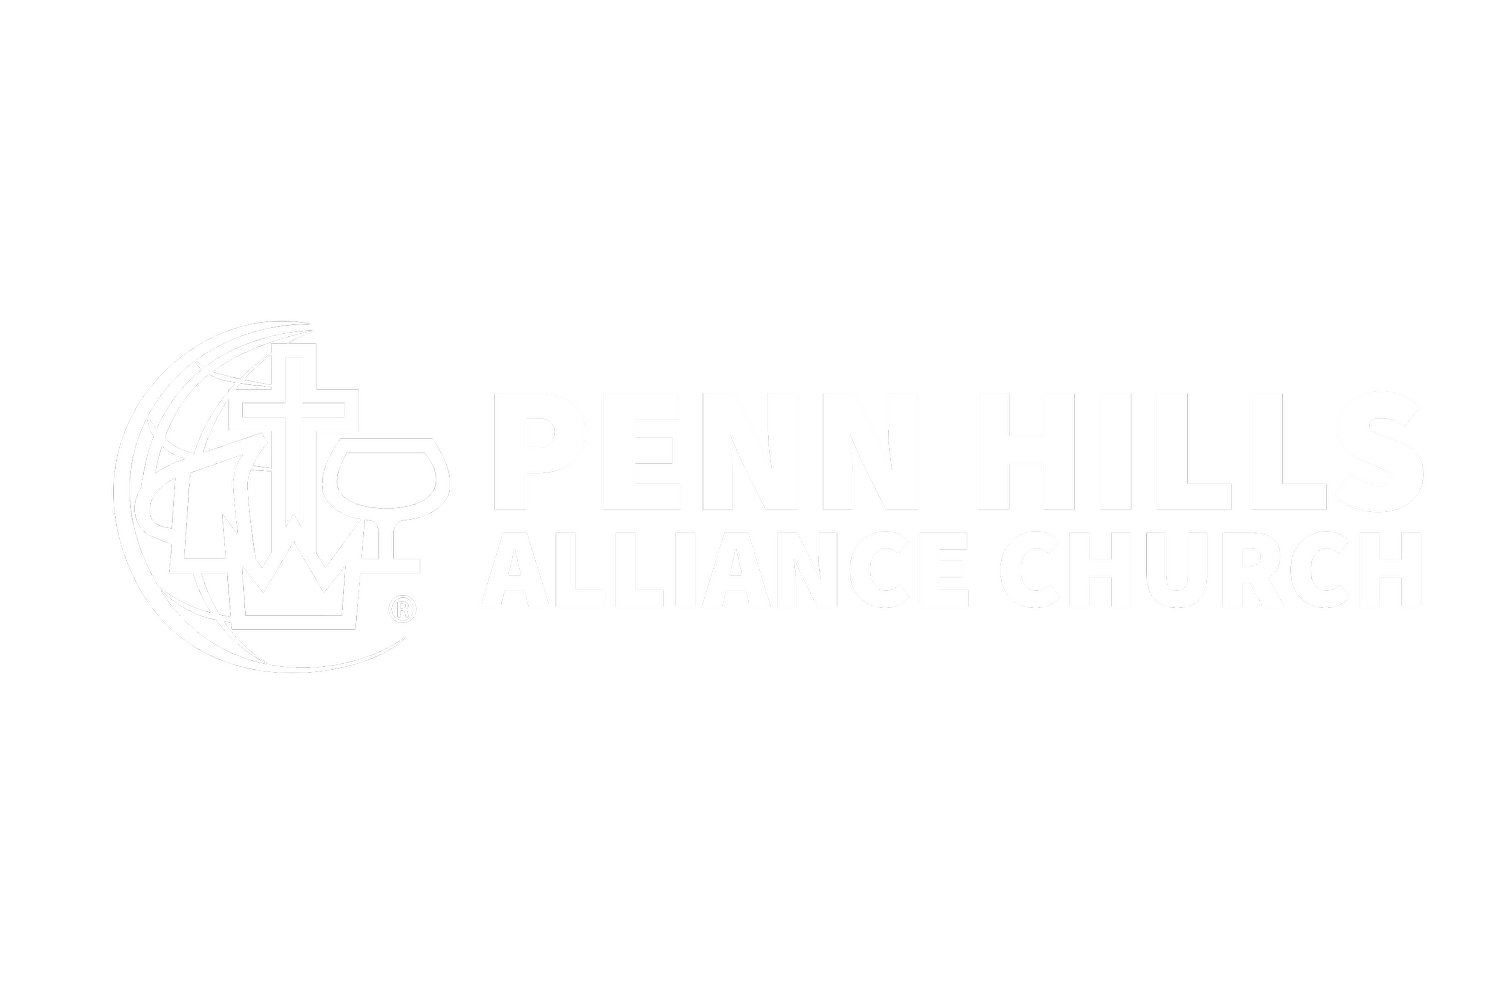 Penn Hills Alliance Church